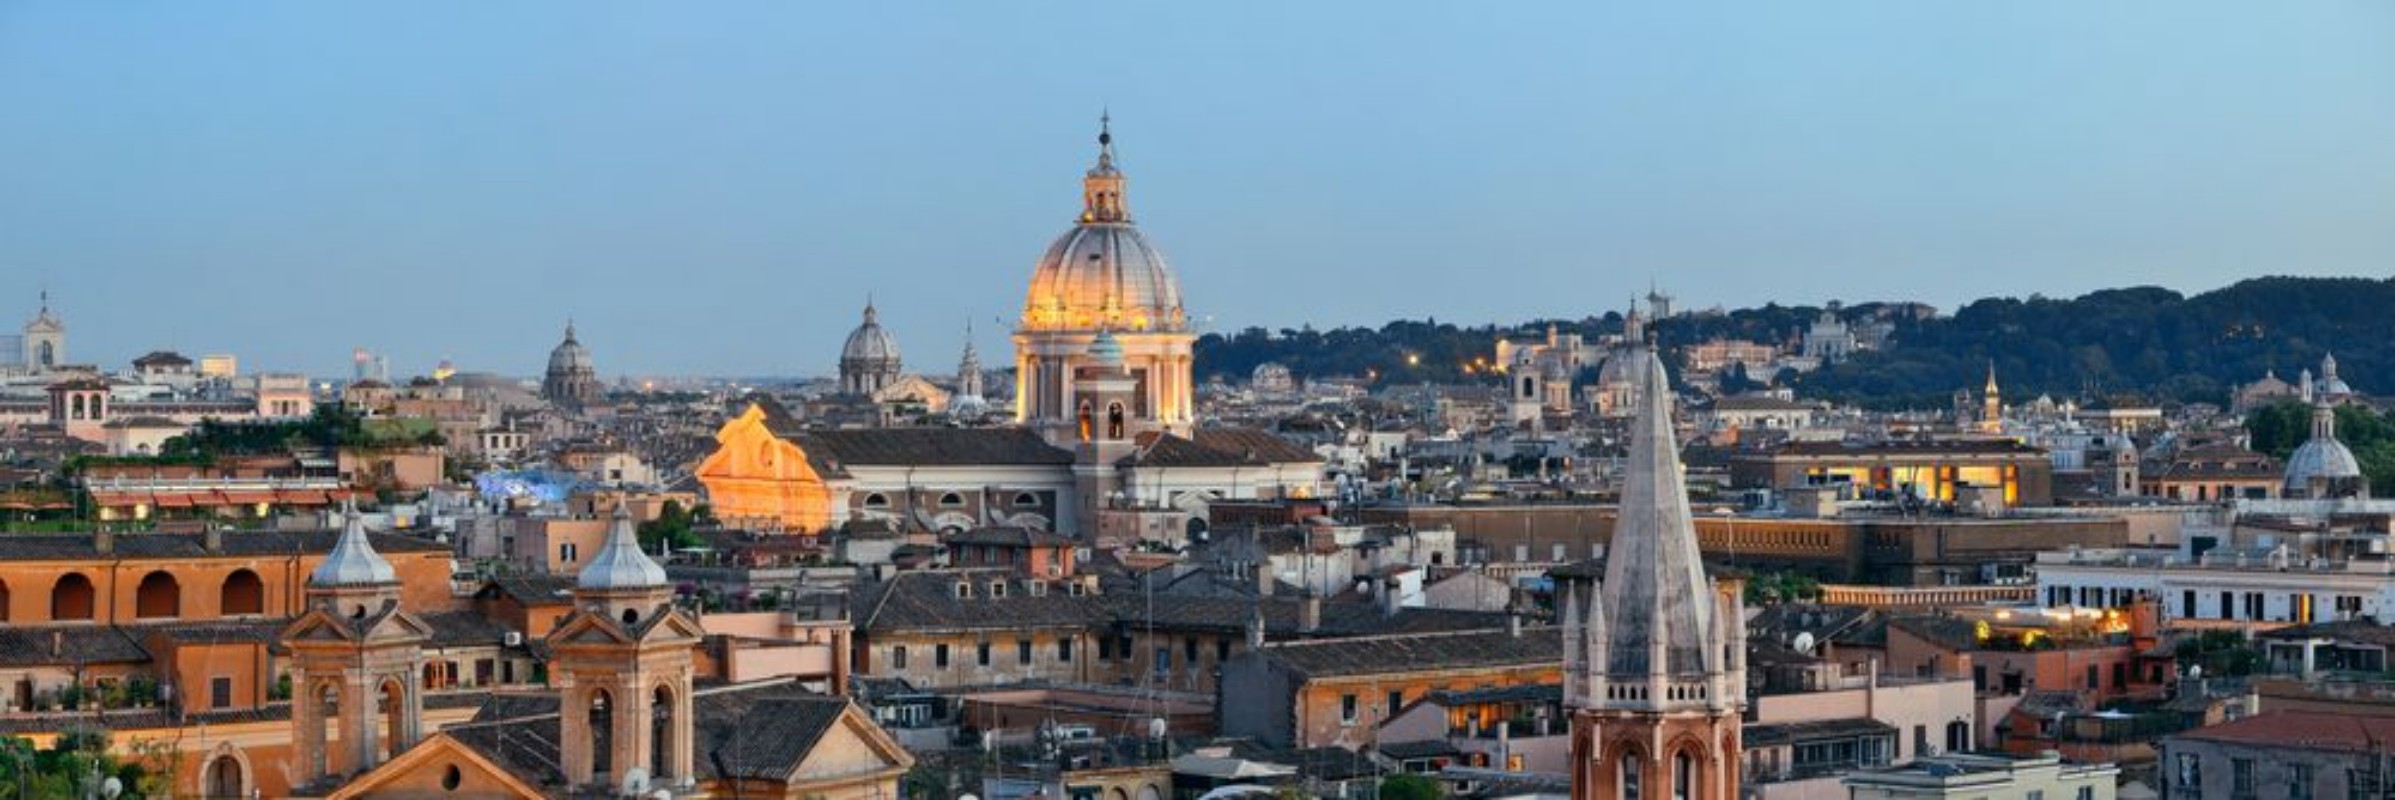 Image de Rome skyline night view